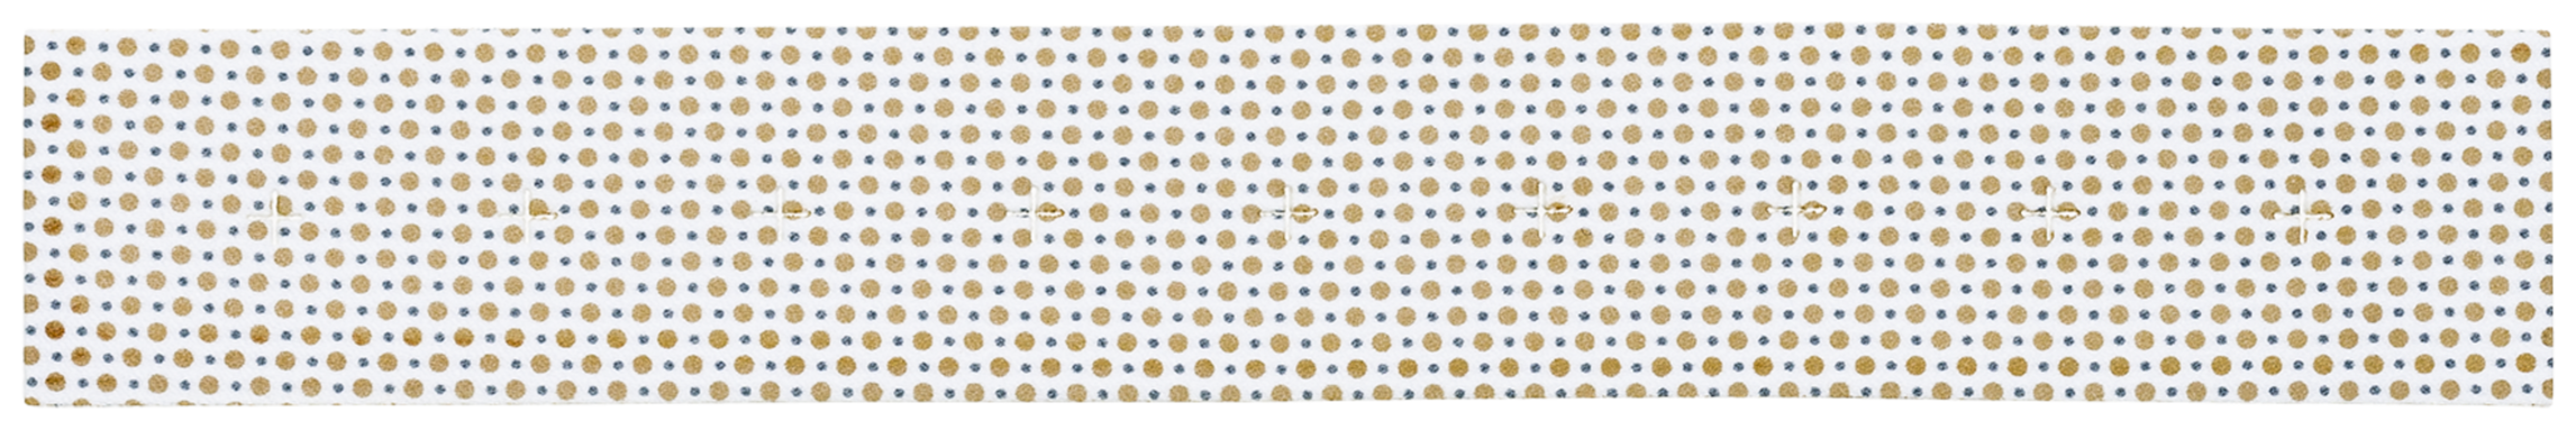 JumpStart, antimikrobielle Wundauflage, 3.5 cm x 25 cm